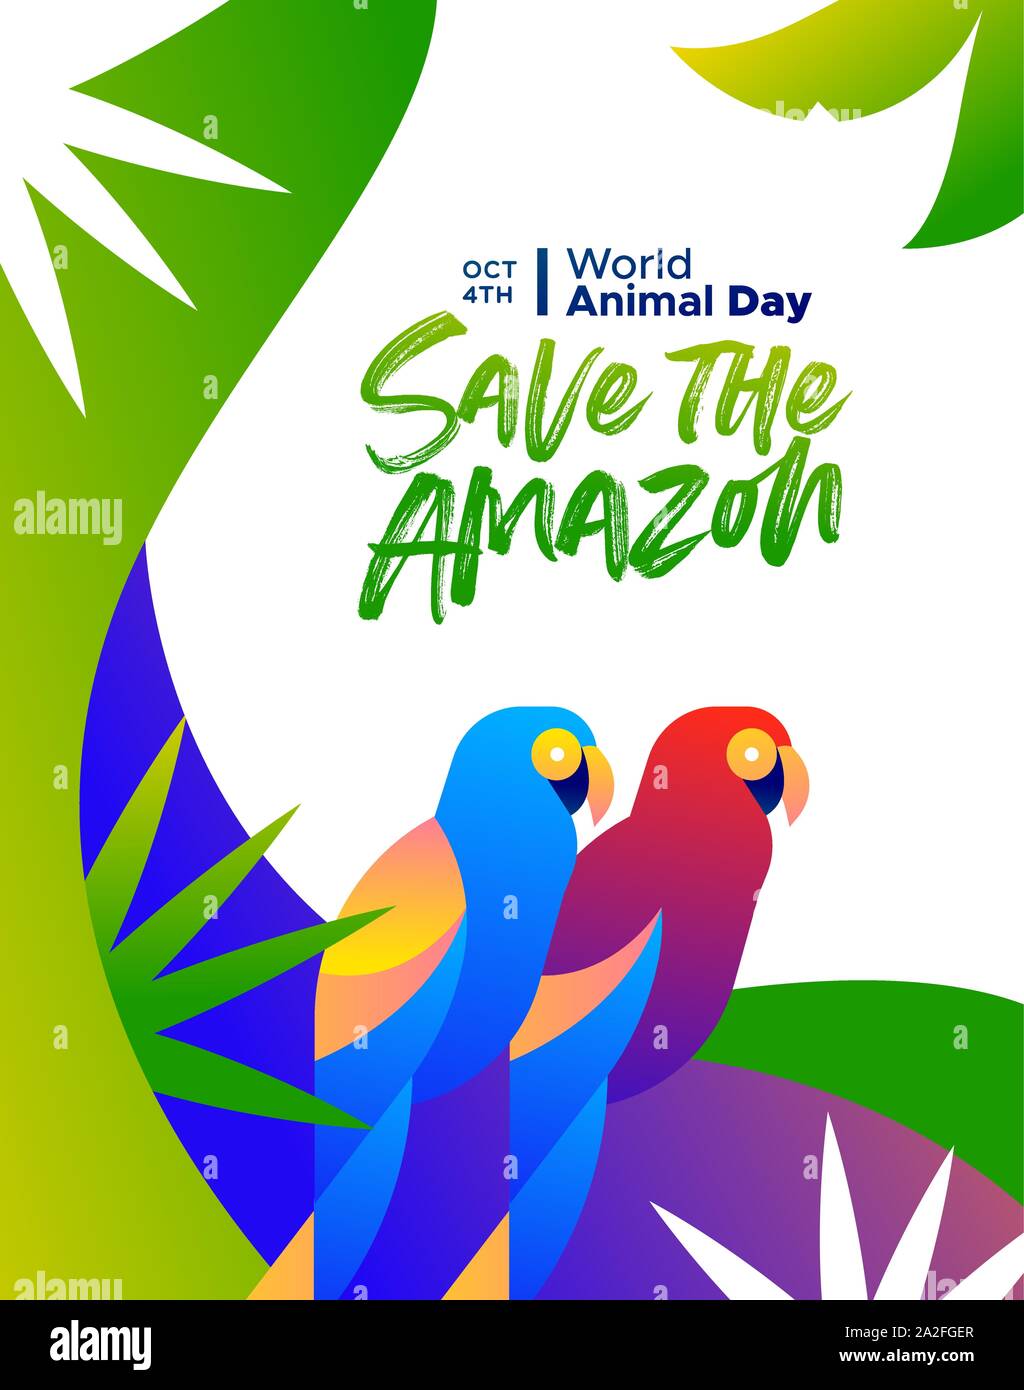 Per salvare l'Amazzonia illustrazione per la Giornata mondiale dell'animale, la deforestazione della foresta pluviale consapevolezza del concetto. Colori brasiliani macaw uccelli nel moderno e vivace flat g Illustrazione Vettoriale